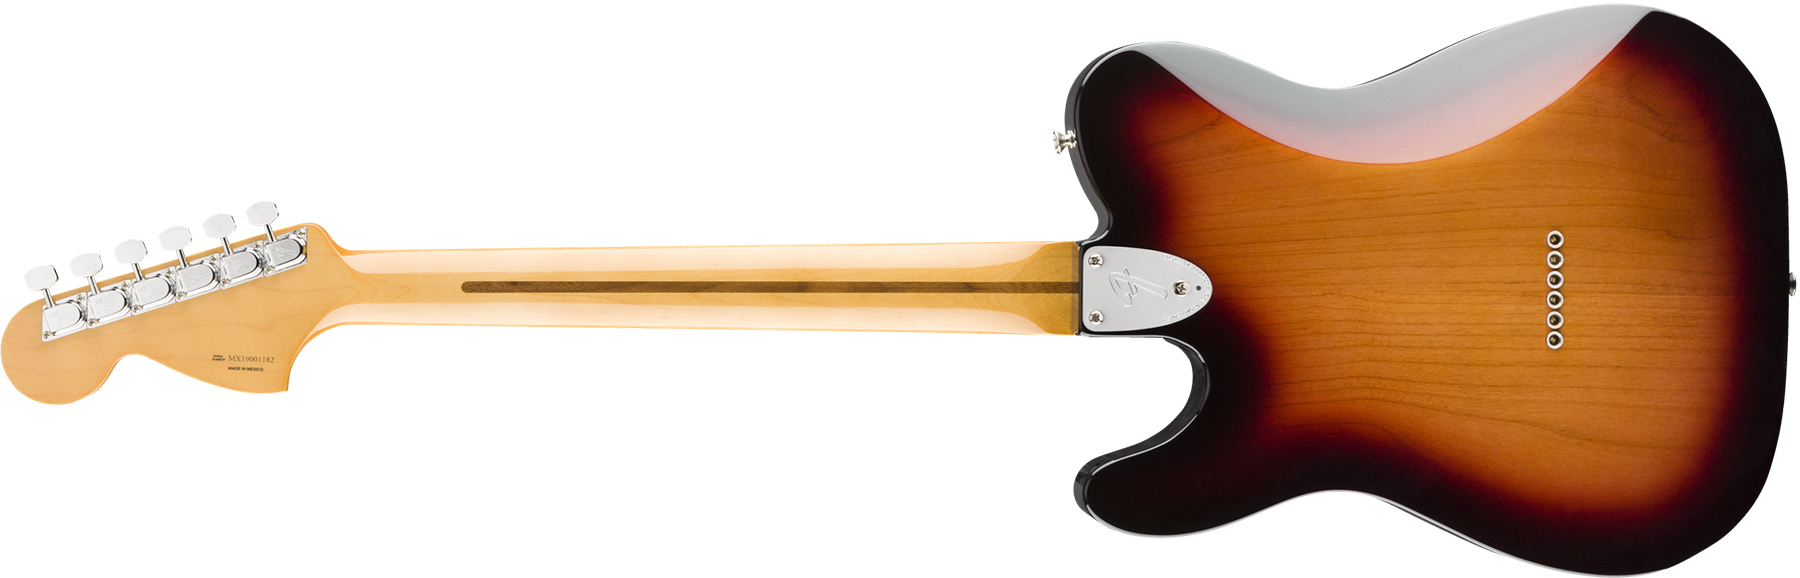 Fender Tele 70s Deluxe Vintera Vintage Mex Mn - 3-color Sunburst - Guitarra eléctrica con forma de tel - Variation 1